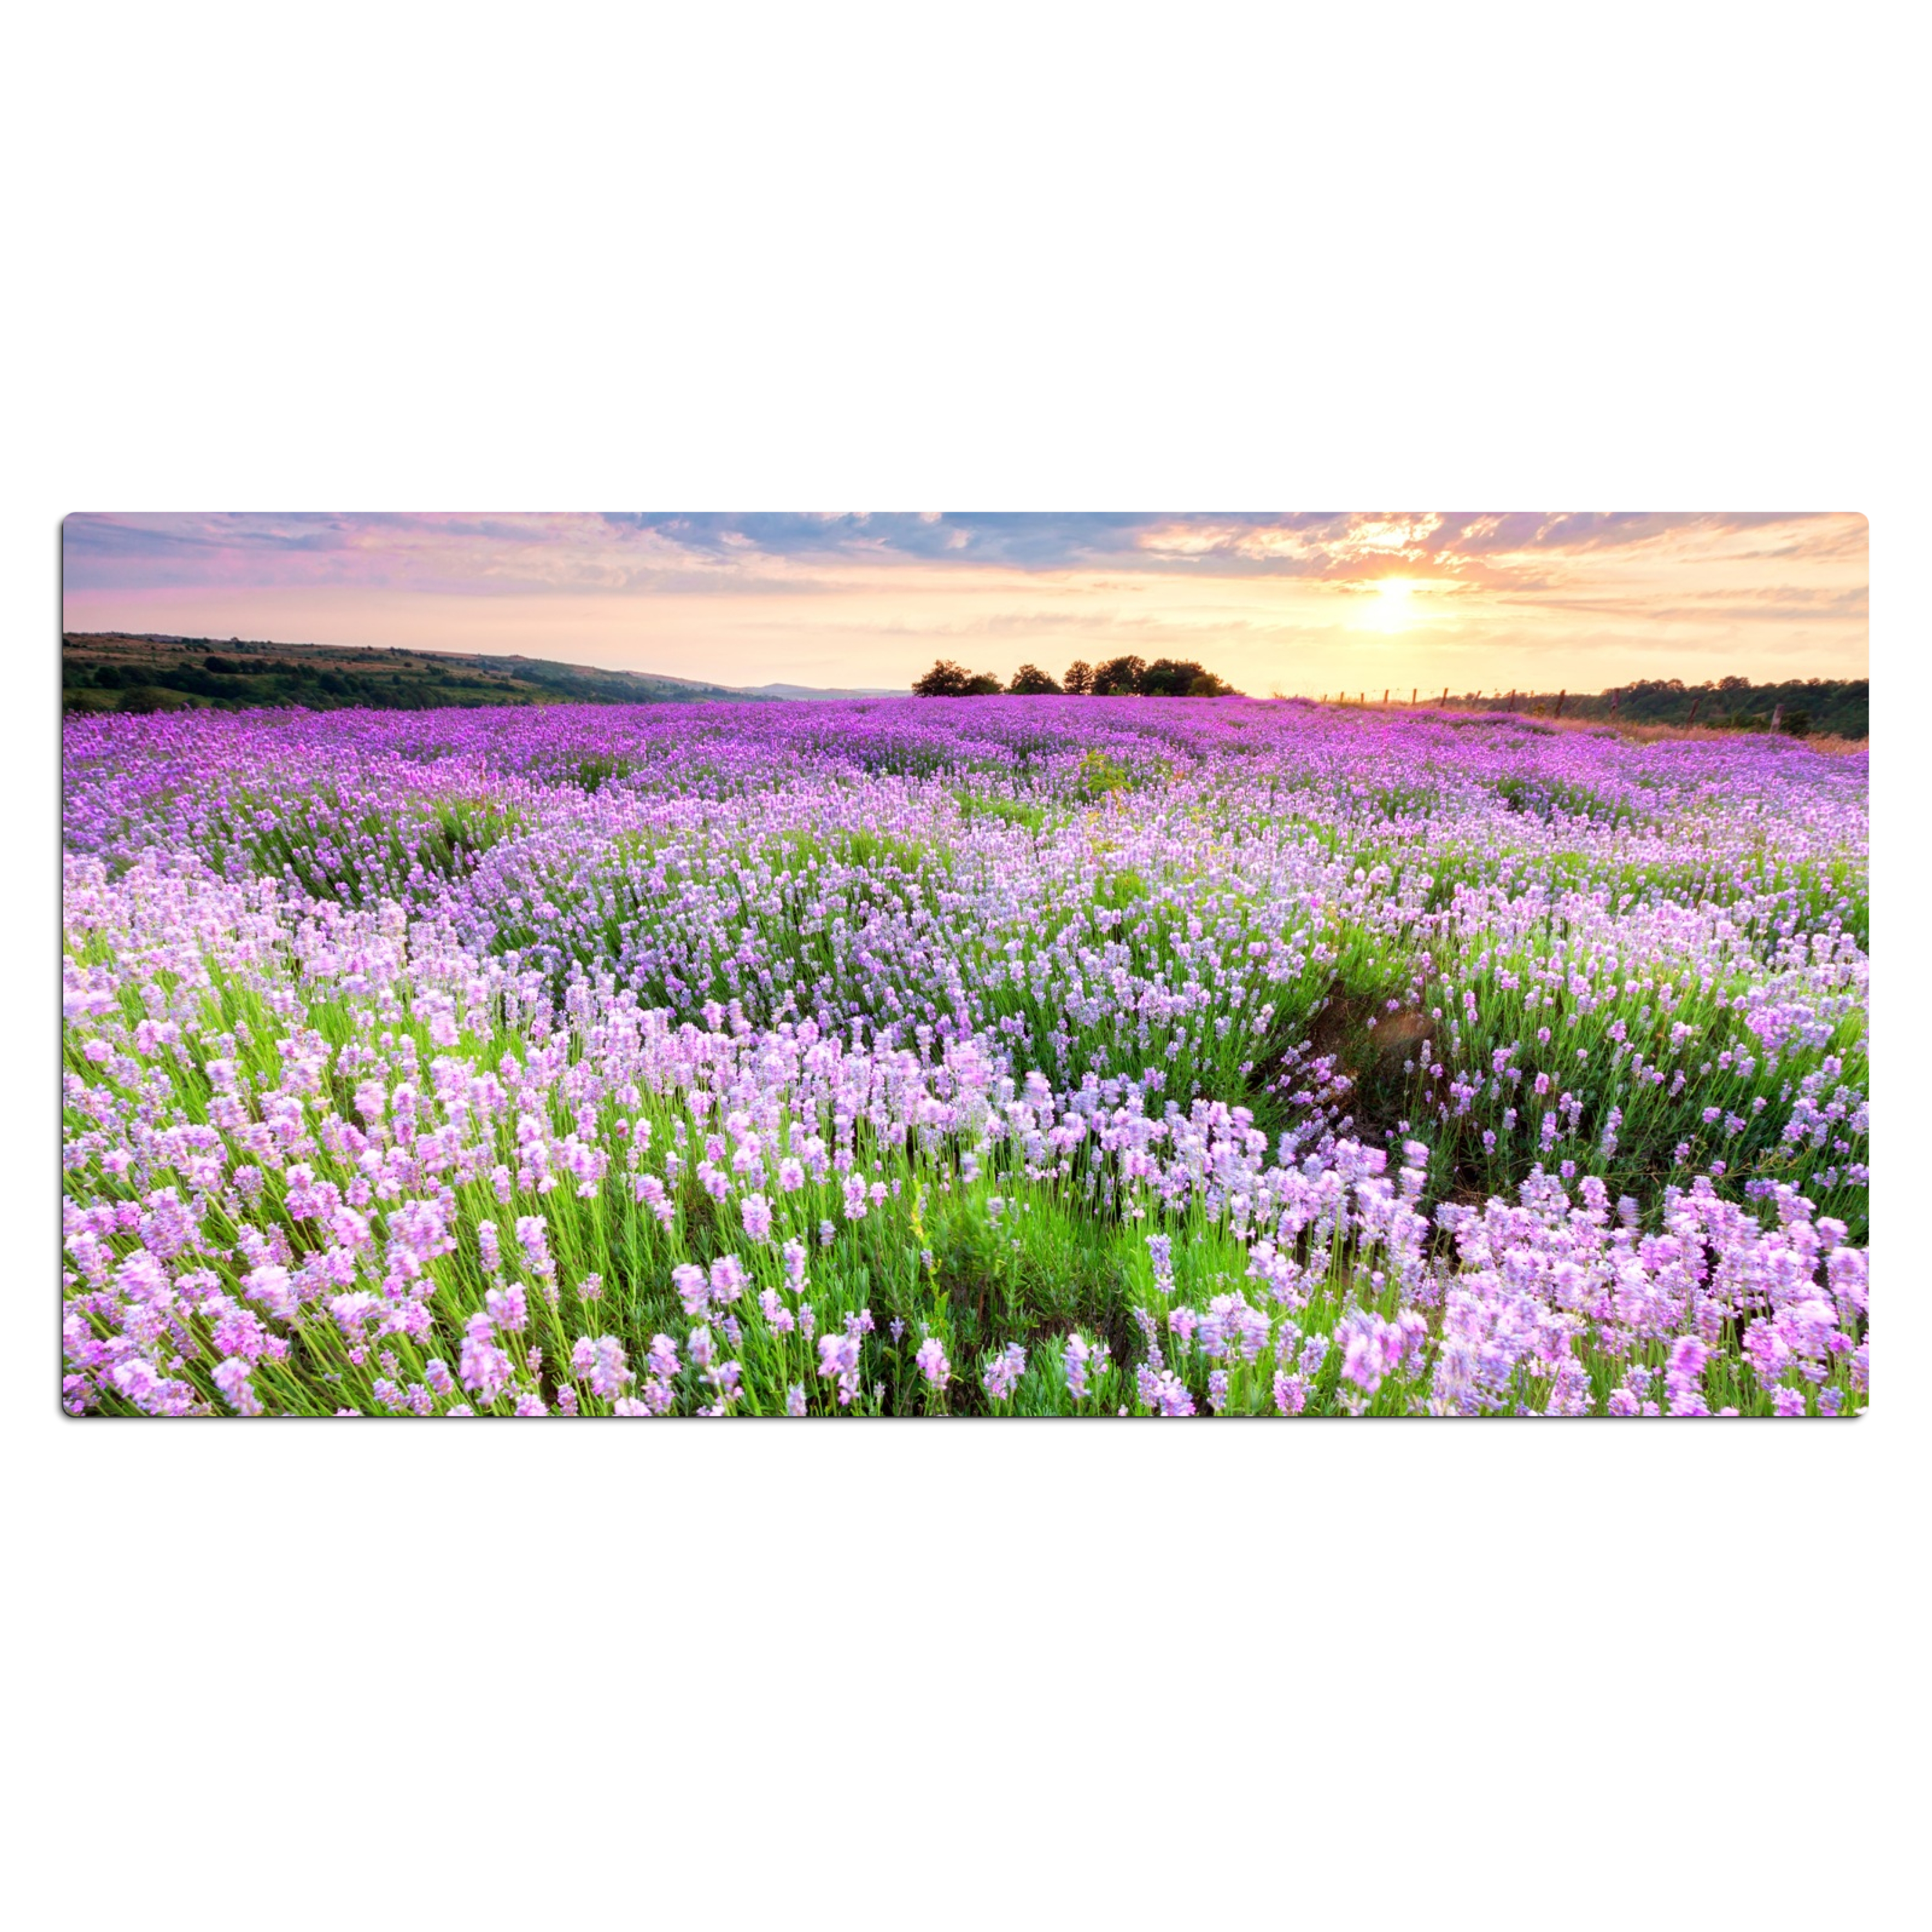 Bureau onderlegger - Lavendel - Bloemen - Zonsondergang - Paars - Weide